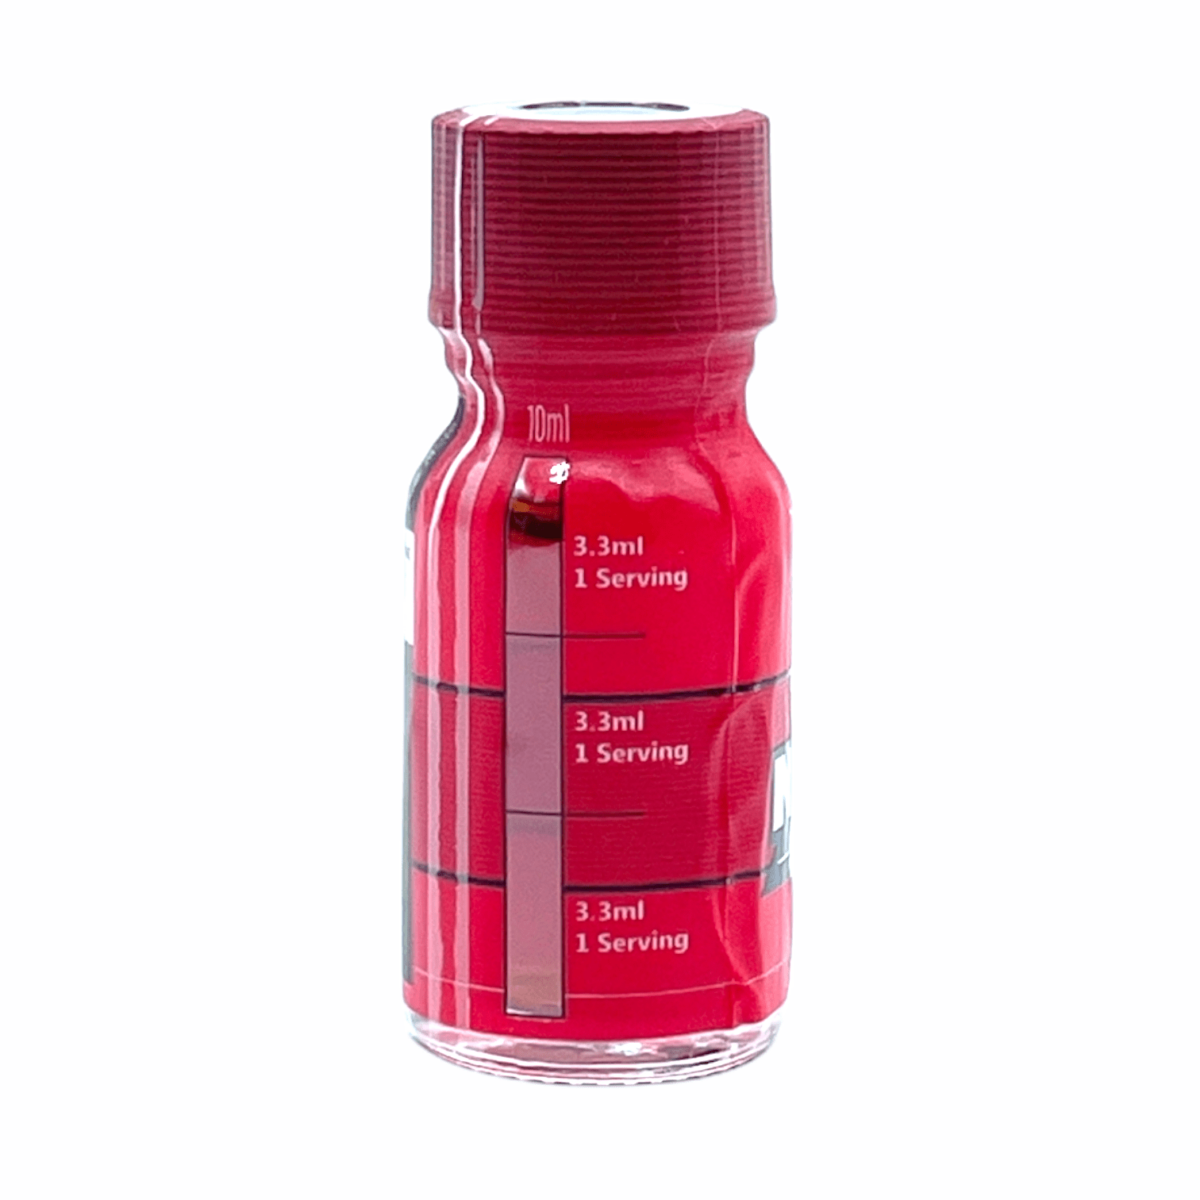 HUSH NANO Kratom Extract Liquid Shot – display box 10ml 12 bottles